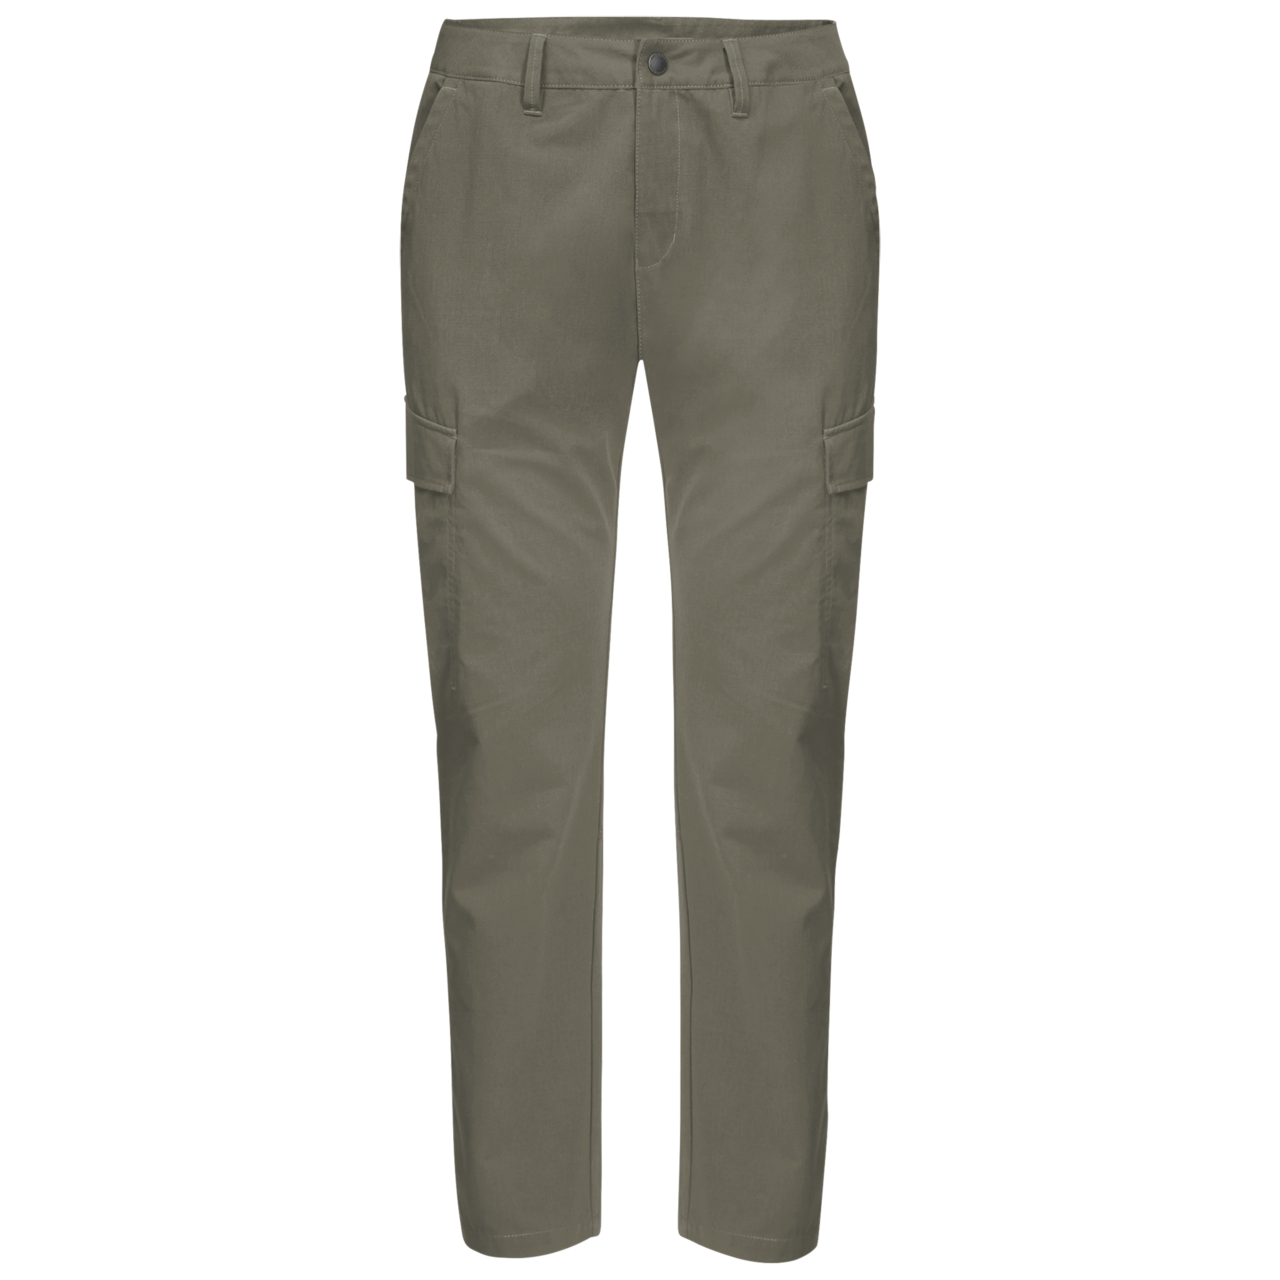 Luxe-T Men's Water-Resistant Nylon Pants